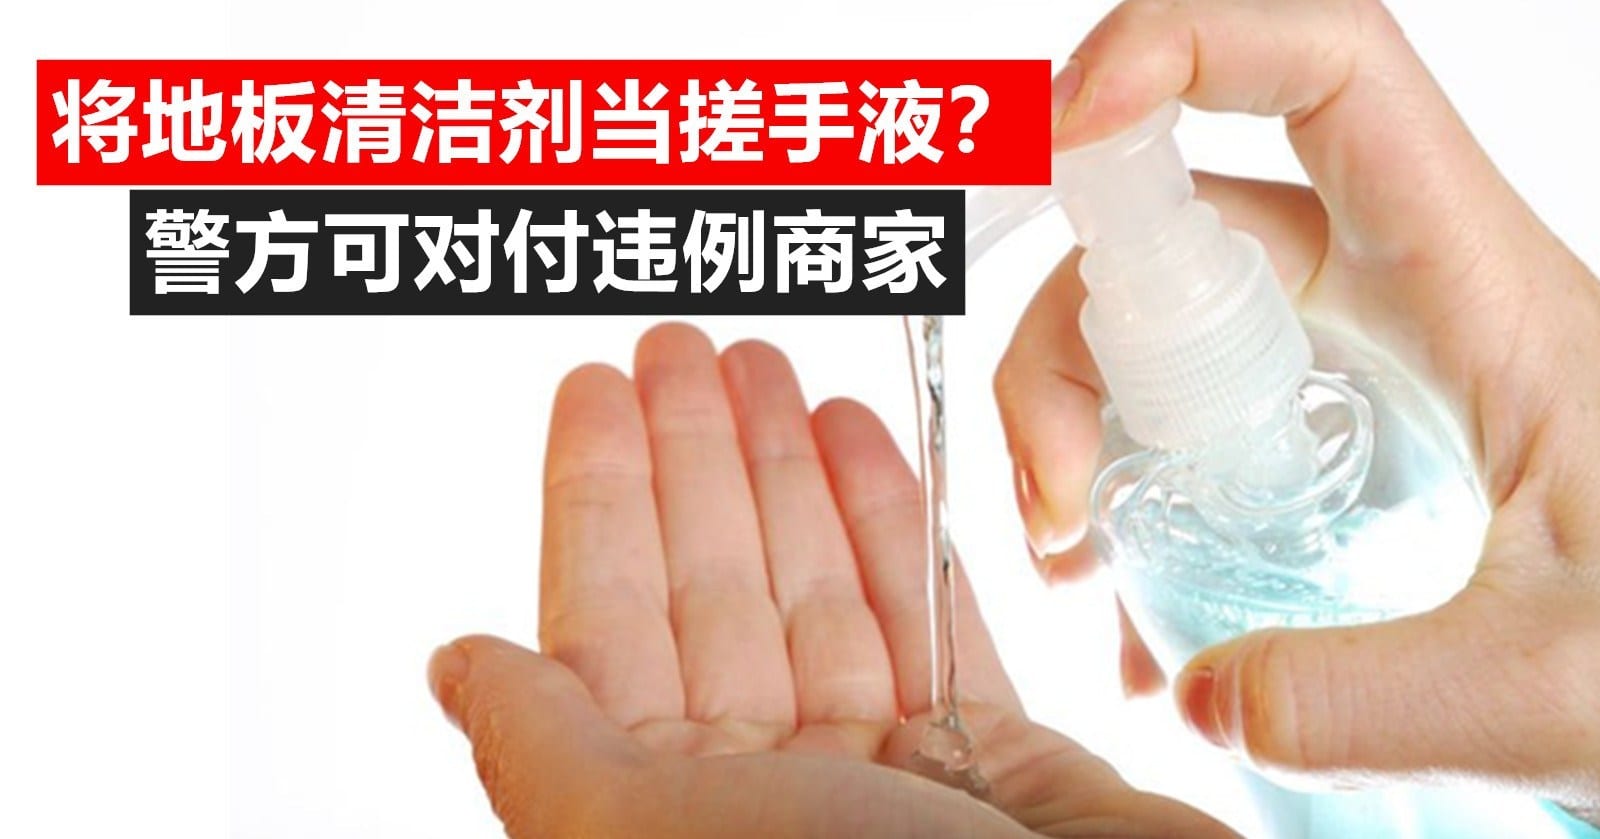 商家提供的搓手液其实是清洁剂？国防部长要求警方对付